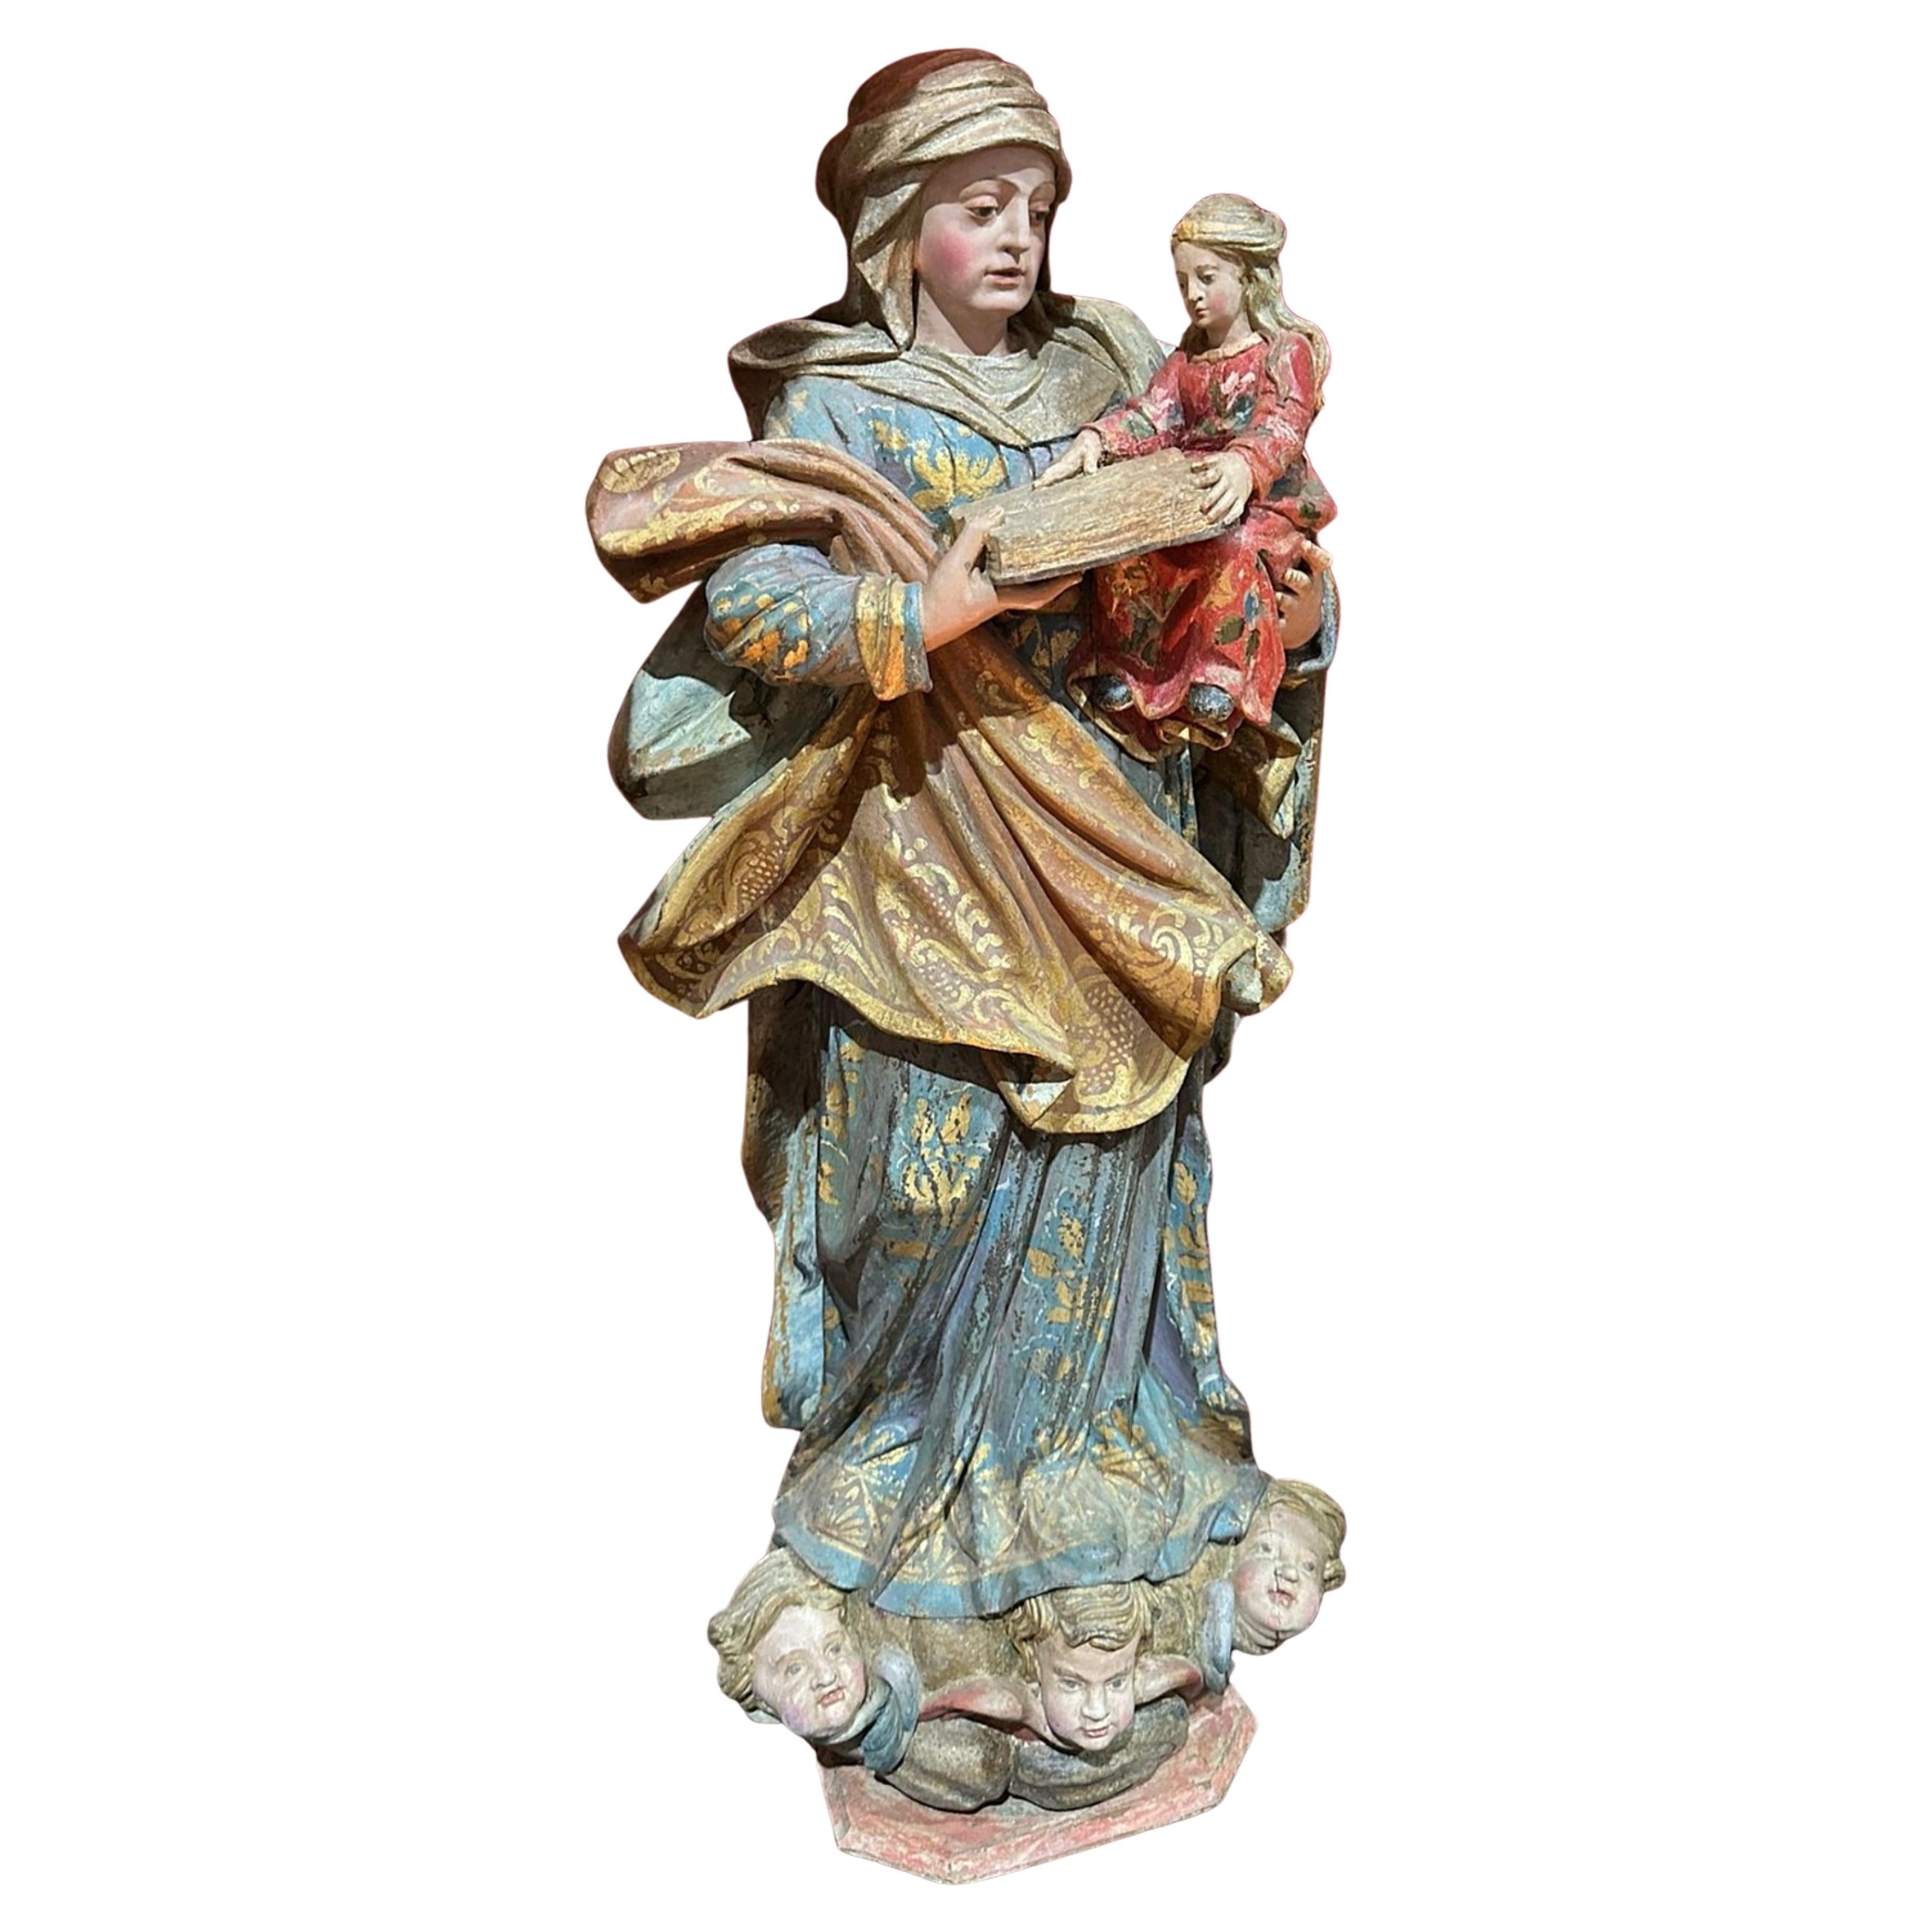 Importante escultura portuguesa del siglo XVII, "Nuestra Señora y el Niño Jesús"